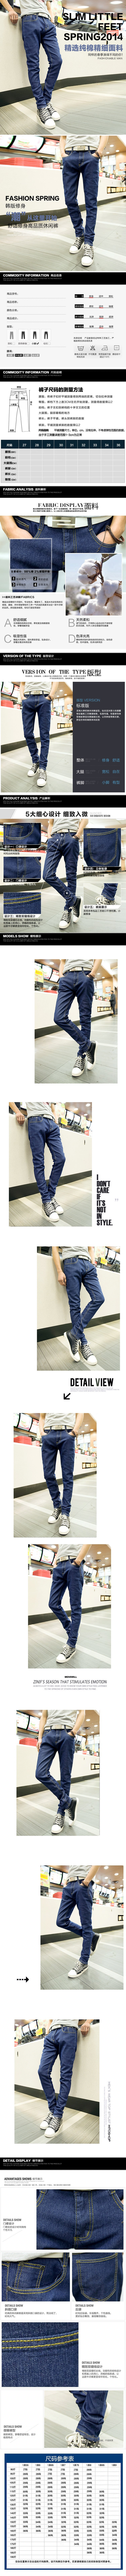 mssefn 2014新款四季修身小脚牛仔裤 韩版铅笔裤 紧身牛仔裤2098-NZ14